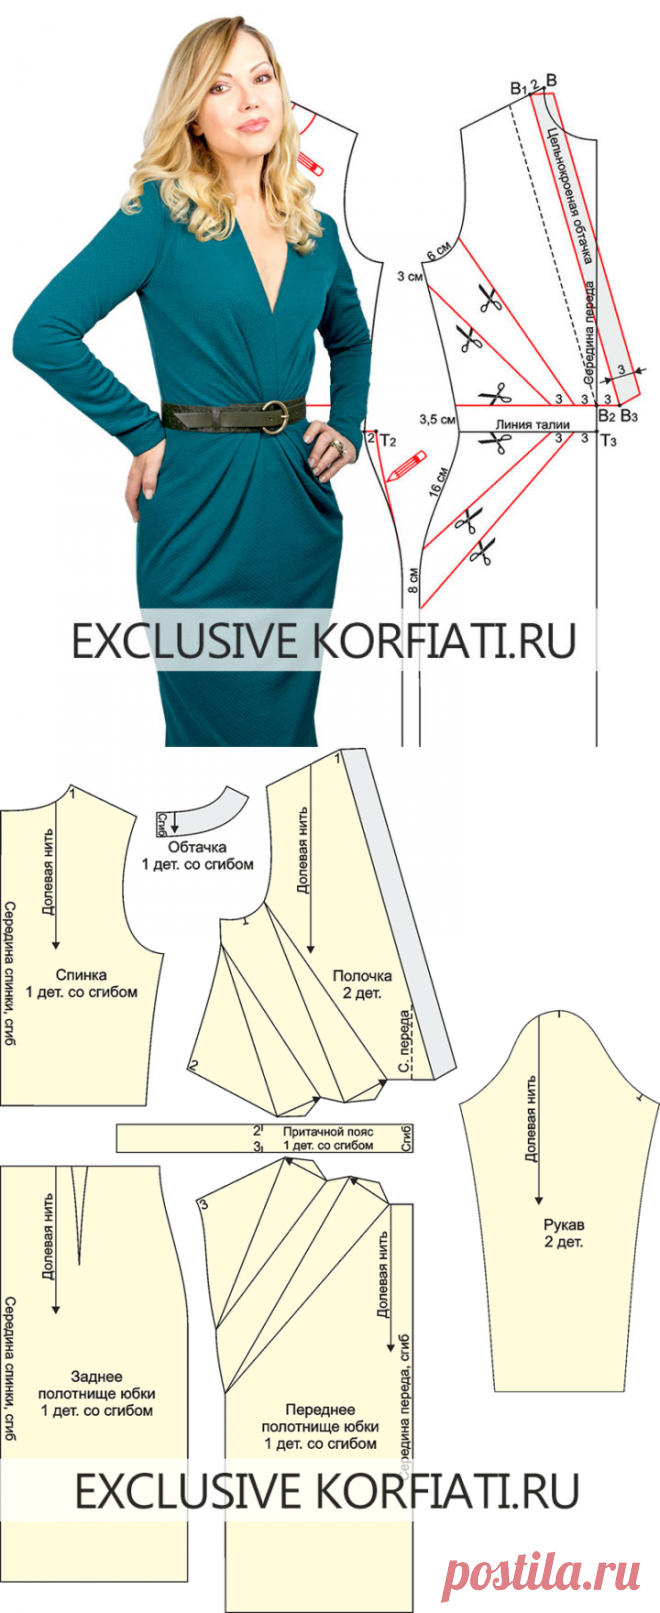 Выкройка платья с драпировкой качели от анастасии корфиати